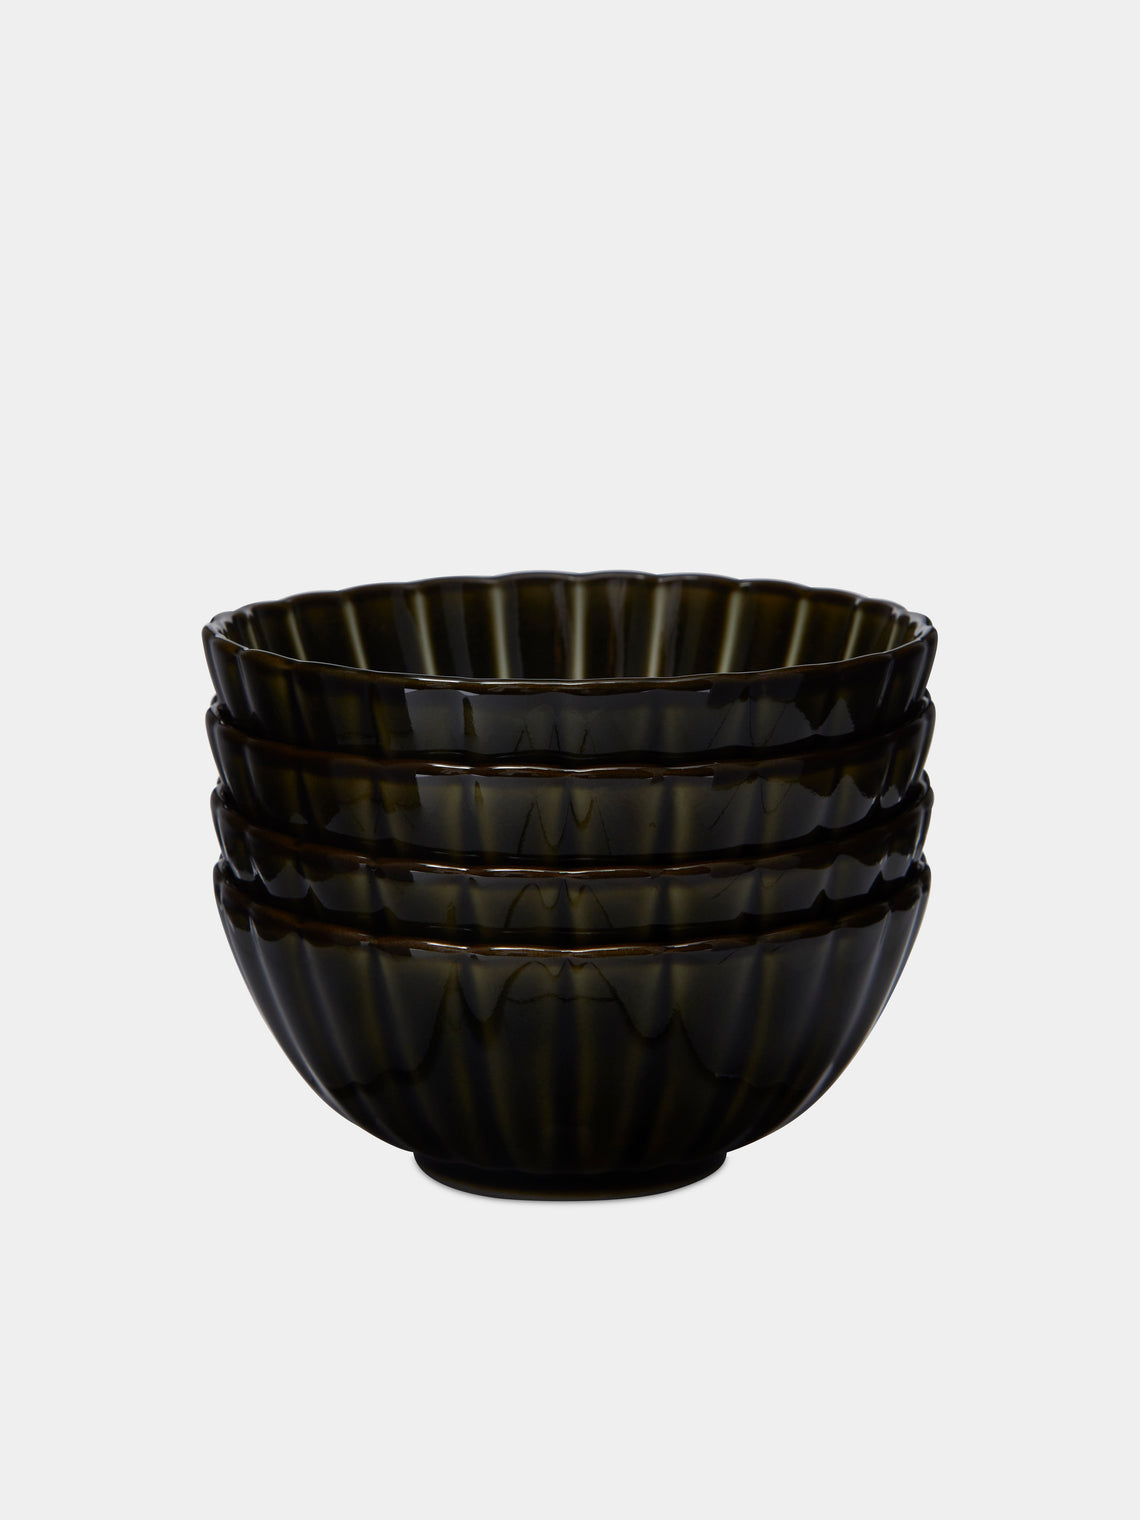 Kaneko Kohyo - Giyaman Urushi Ceramic Bowls (Set of 4) - Green - ABASK